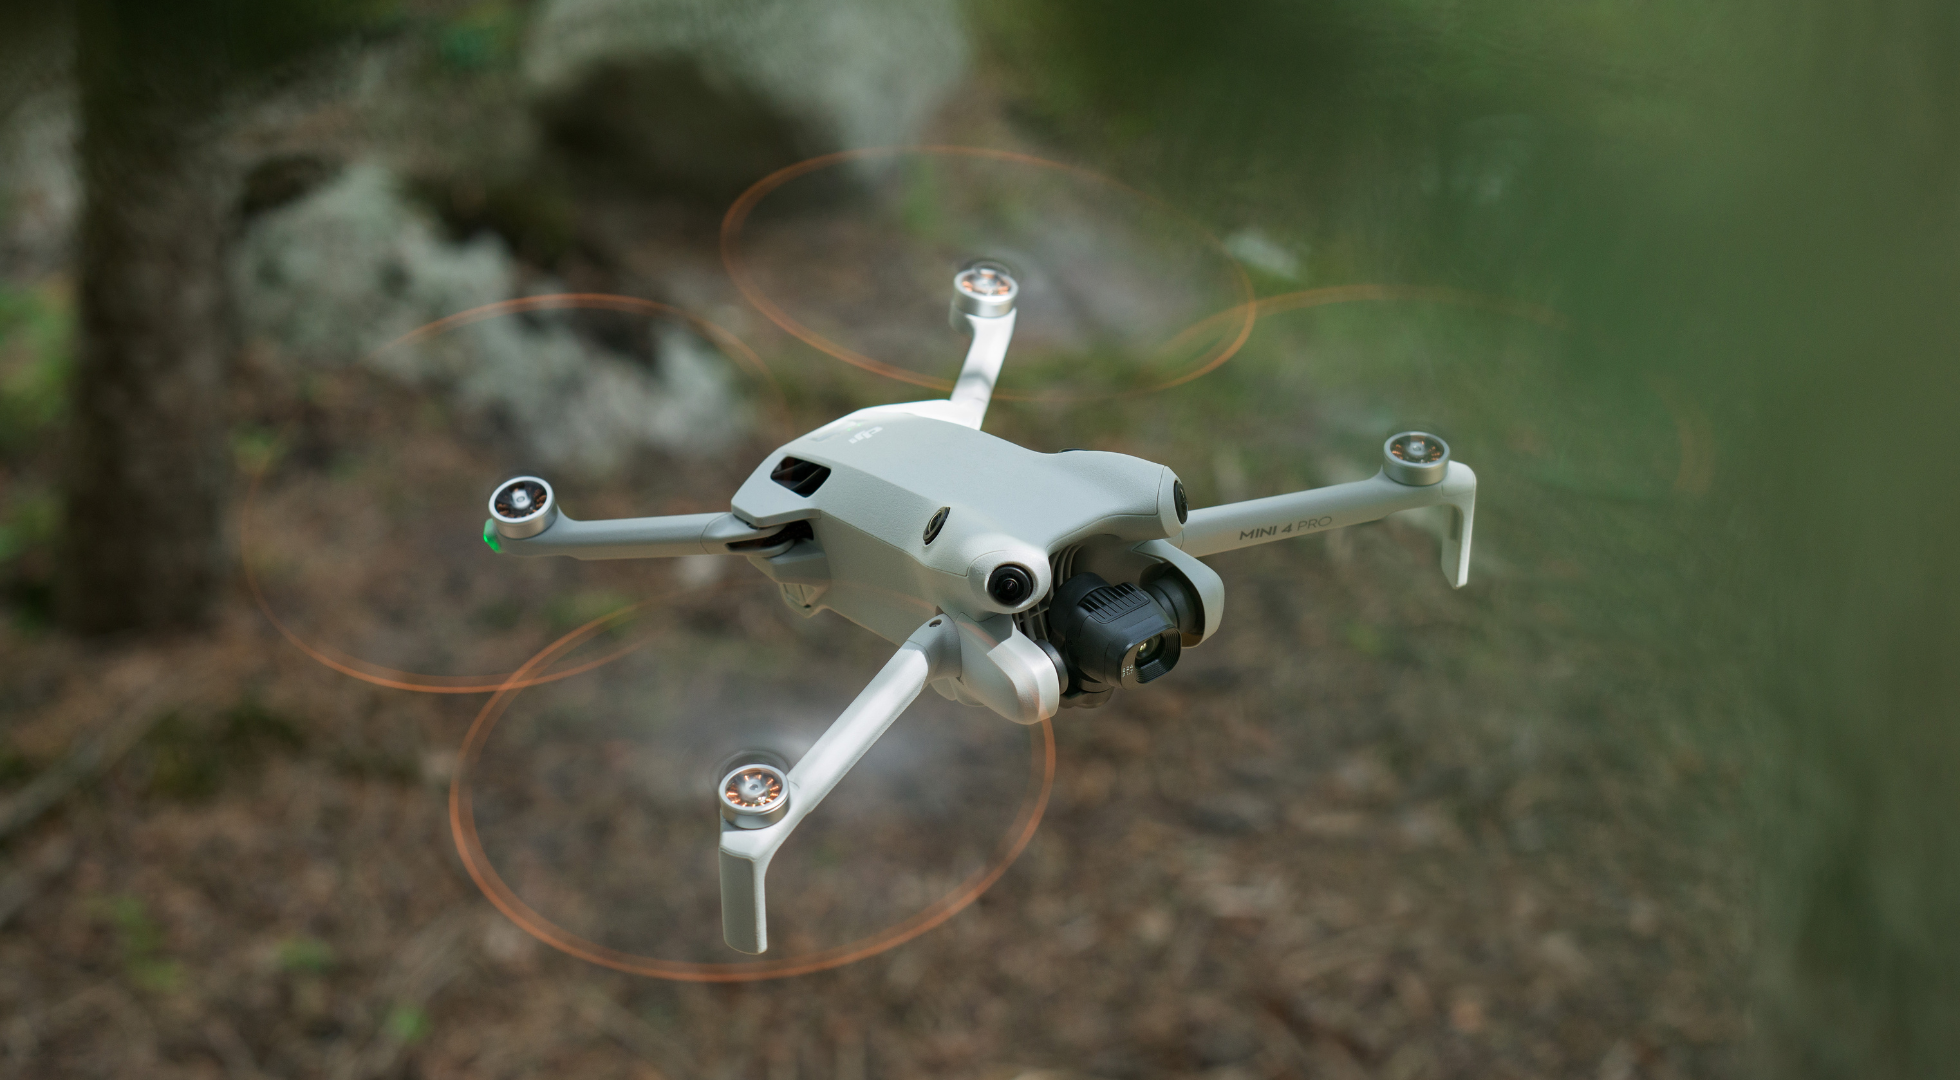 DJI Mini 4 Pro drone review